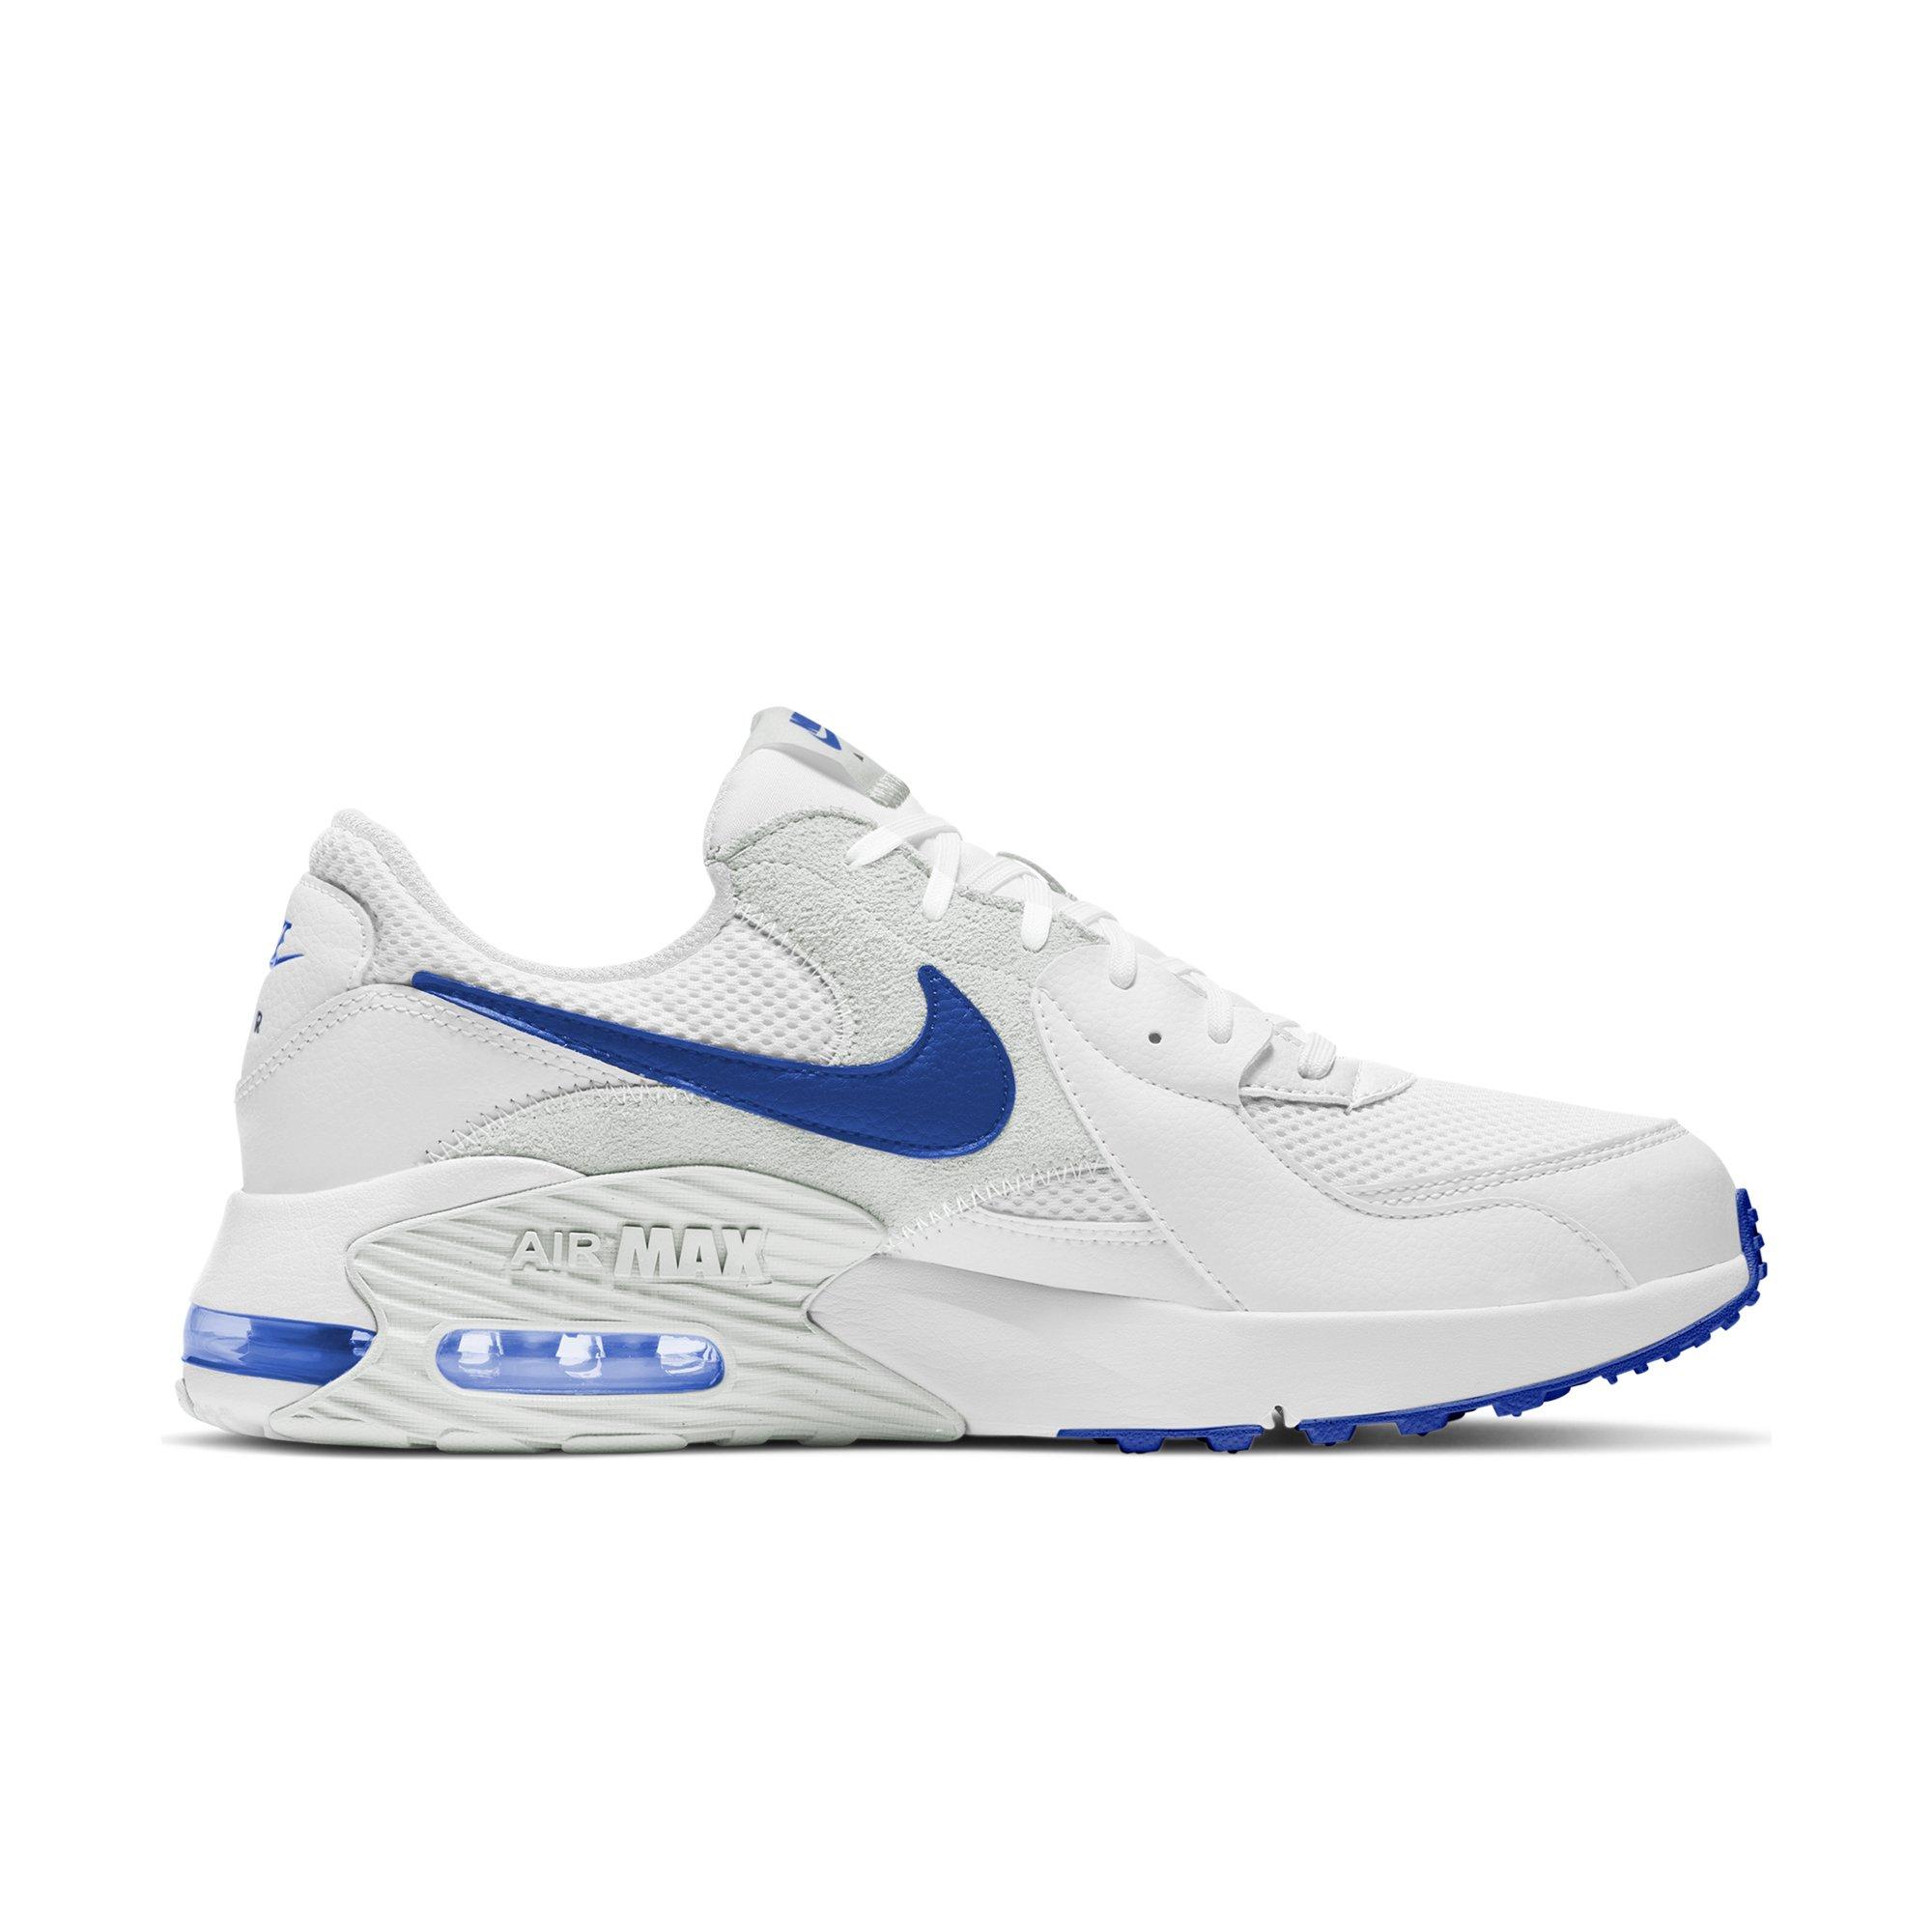 Odio pasillo evaporación Nike Air Max Excee "White/Blue" Men's Shoe